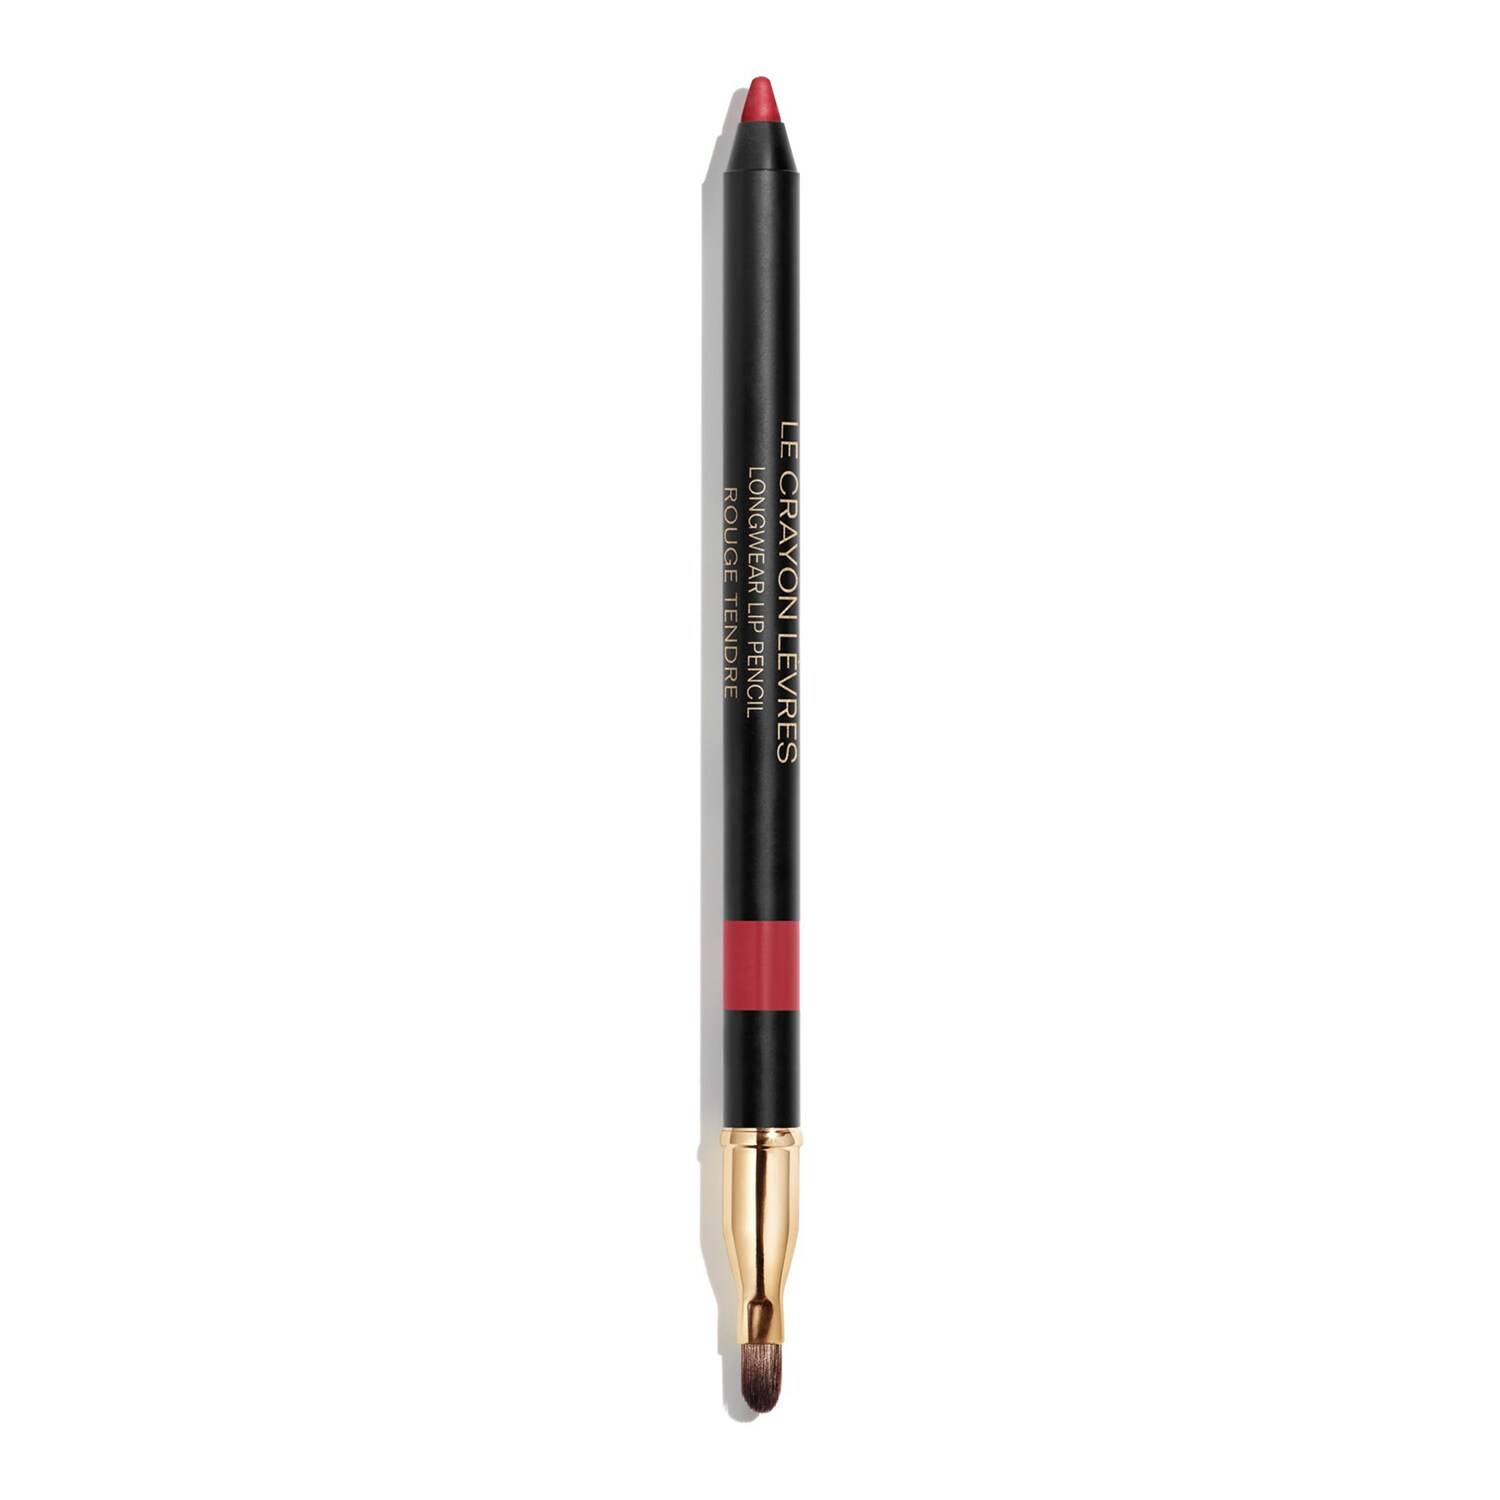 Chanel Le Crayon Levres - Longwear Lip Pencil 174 Rouge Tendre